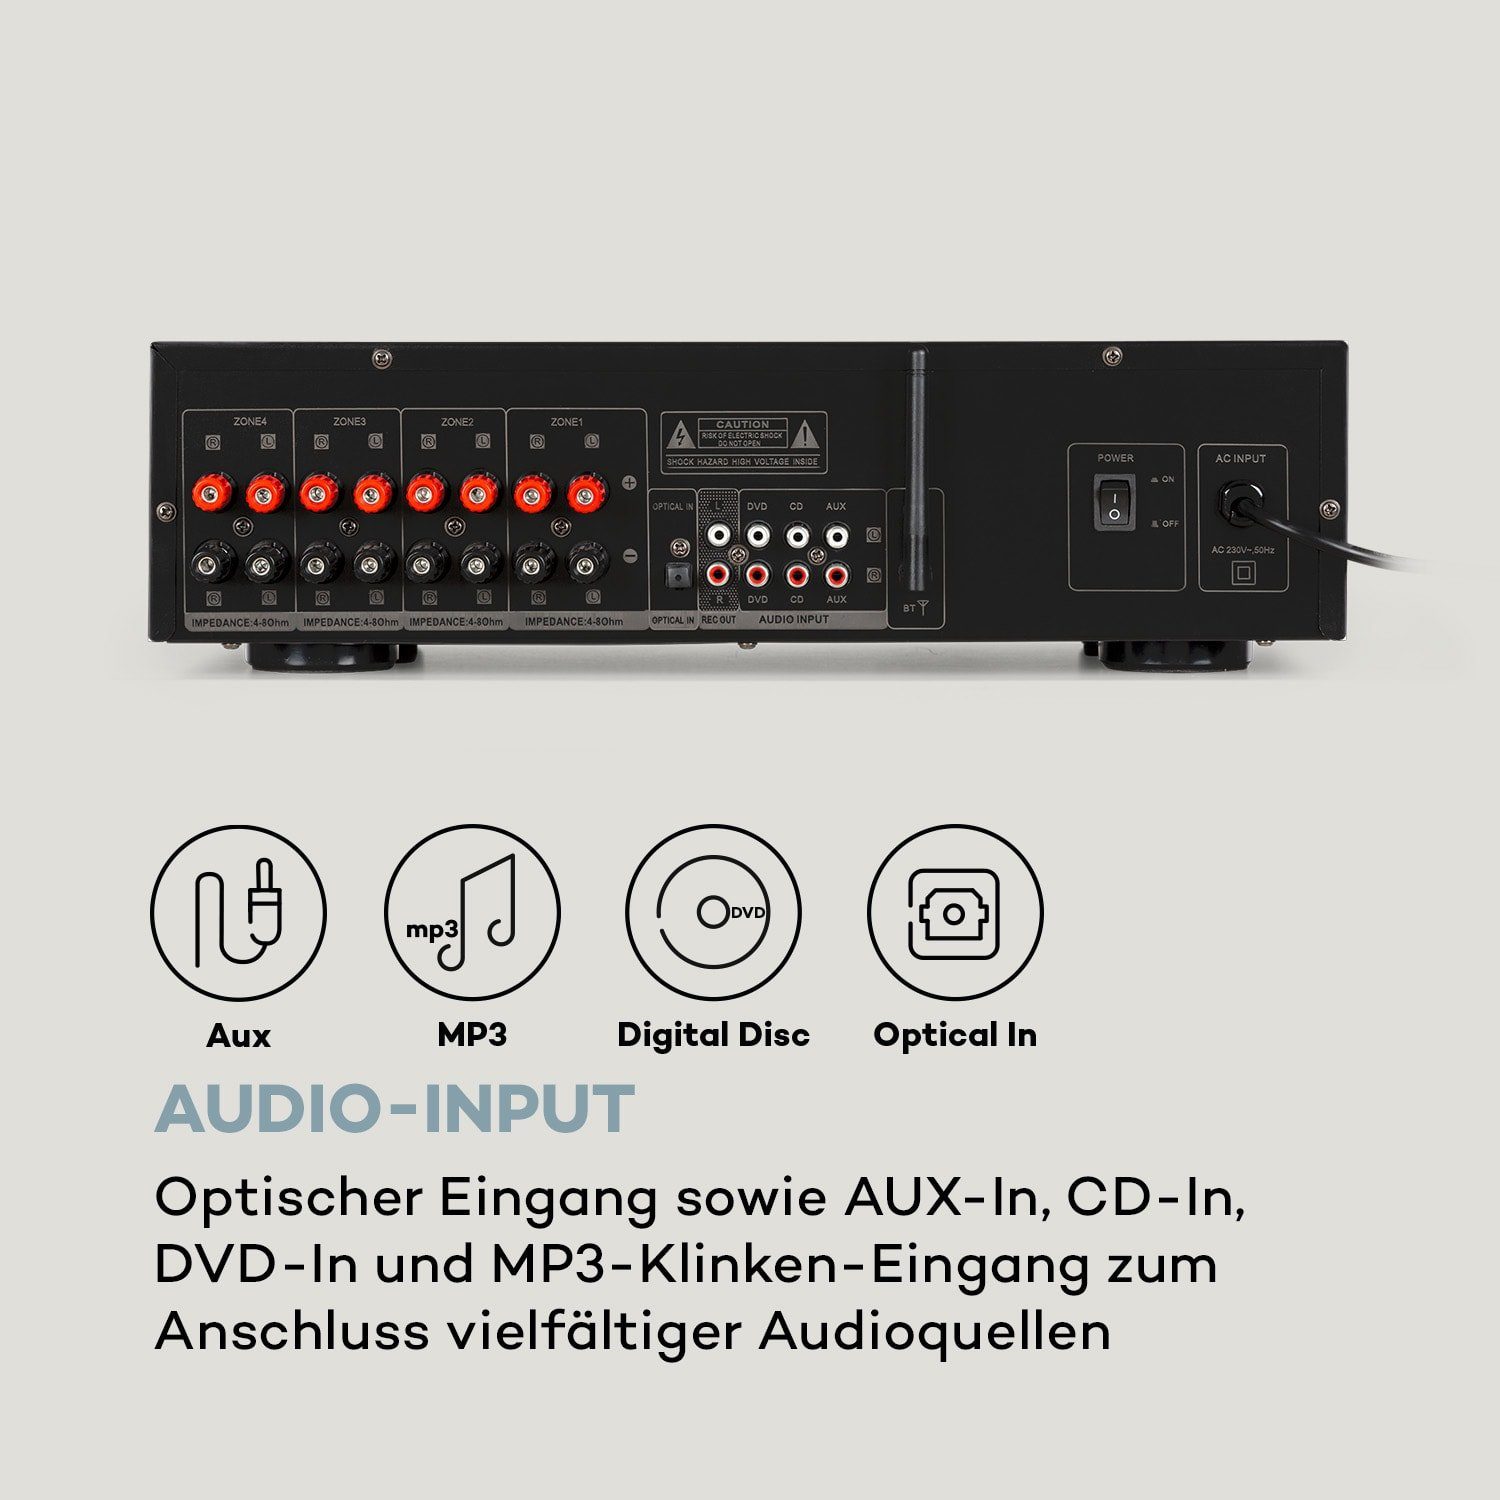 Auna AMP-CD950 DG Audioverstärker (Anzahl 800 Kanäle: W) 4-Kanal